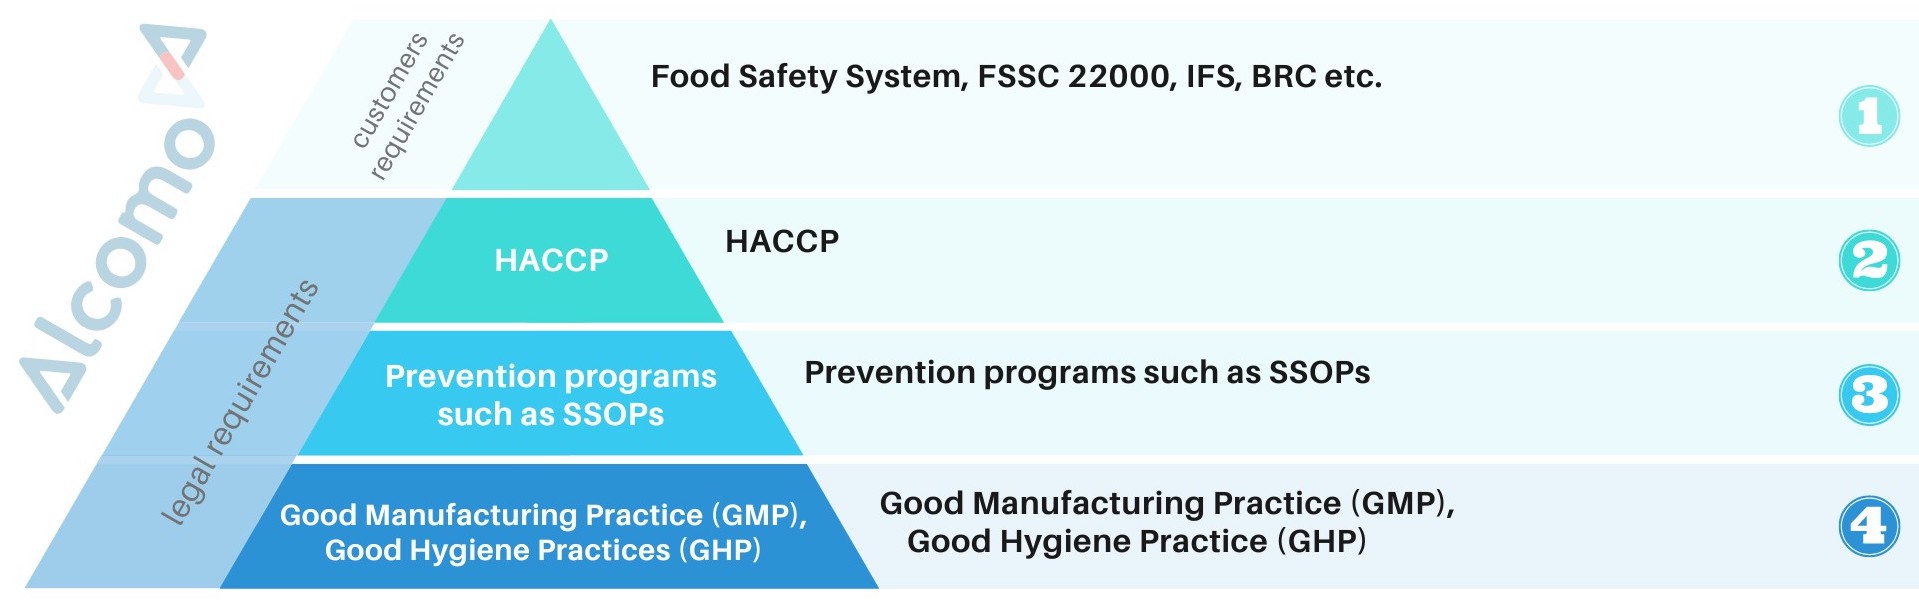 HACCP concept